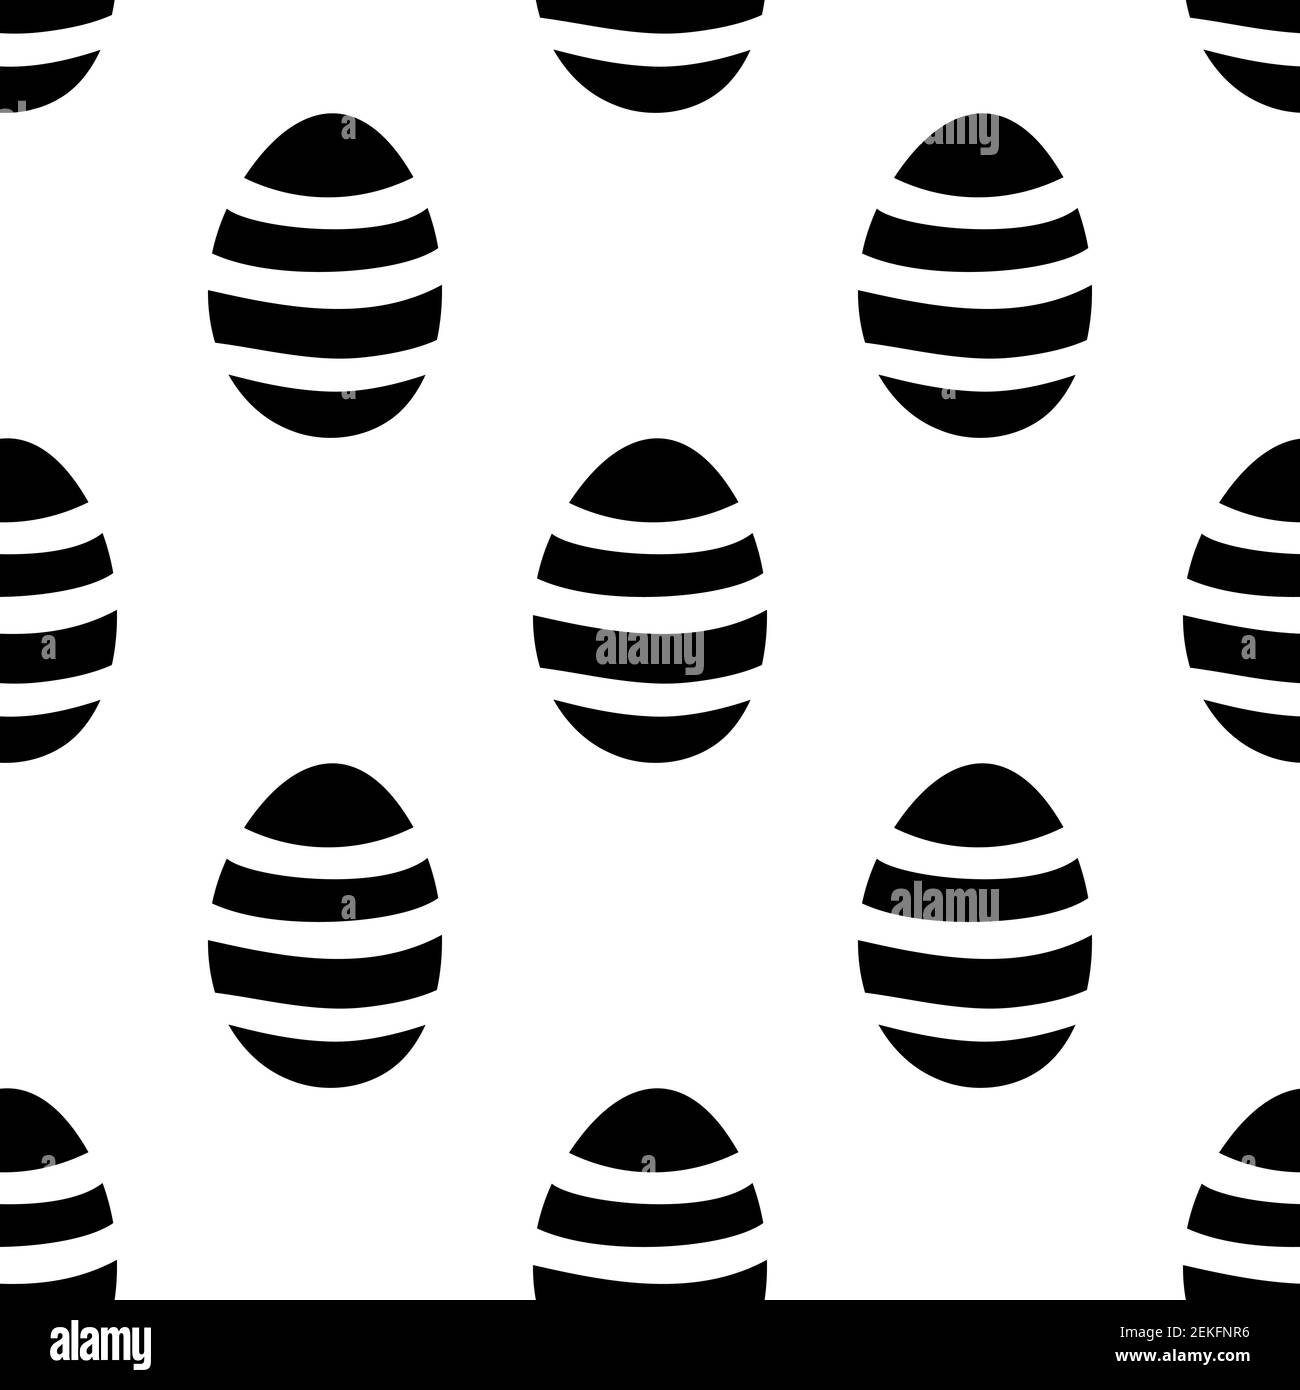 Nahtloses Muster aus handgezeichneten Ostereiern Illustration. Isoliert auf weißem Hintergrund. Stock Vektor